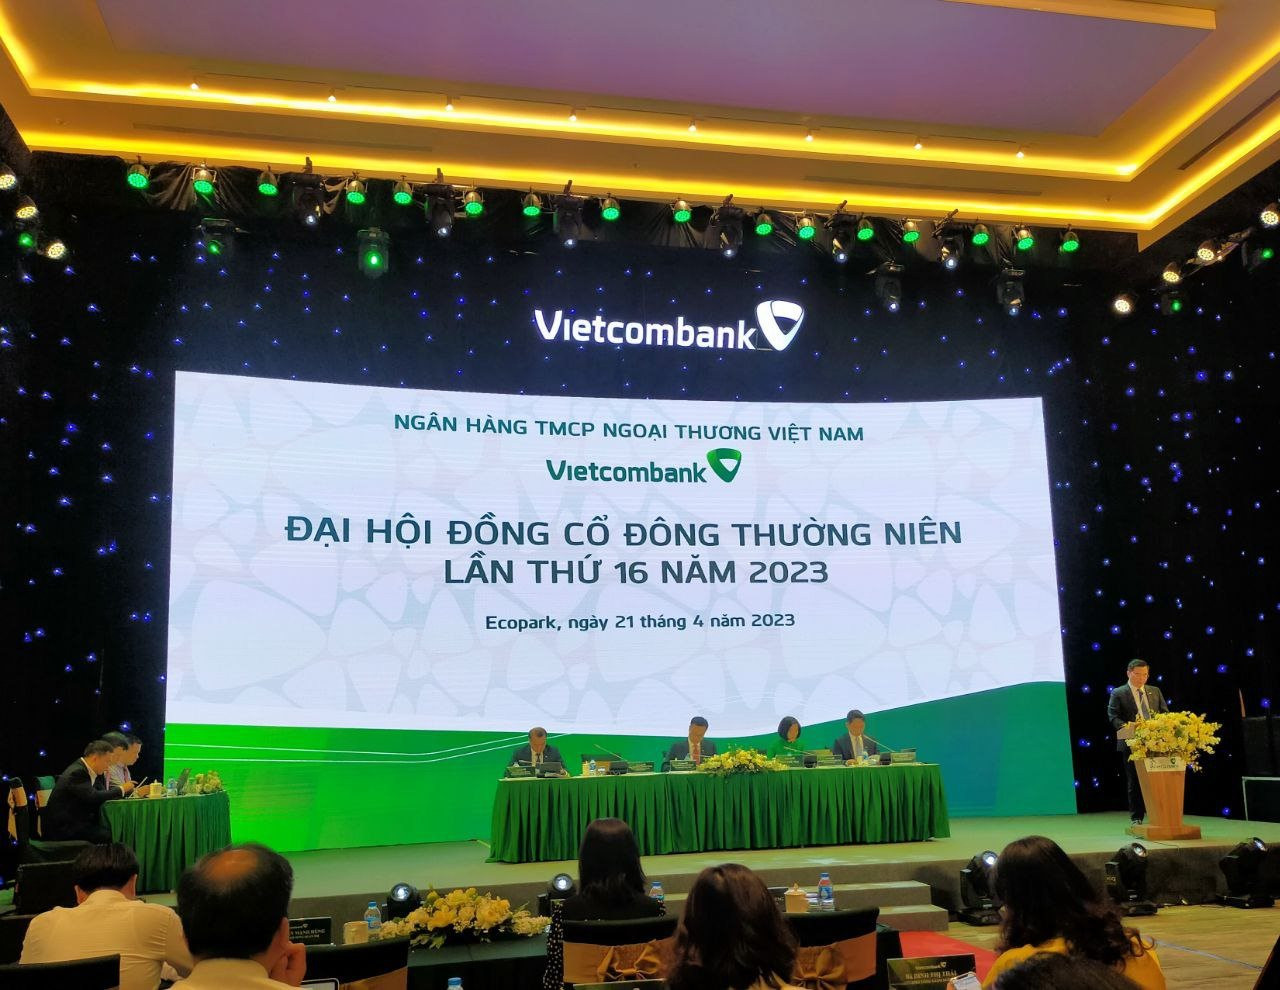 ĐHĐCĐ Vietcombank: Dự kiến trích 21.680 tỷ đồng chia cổ tức năm 2022, đã trình Chính phủ chủ trương nhận chuyển giao bắt buộc 1 TCTD